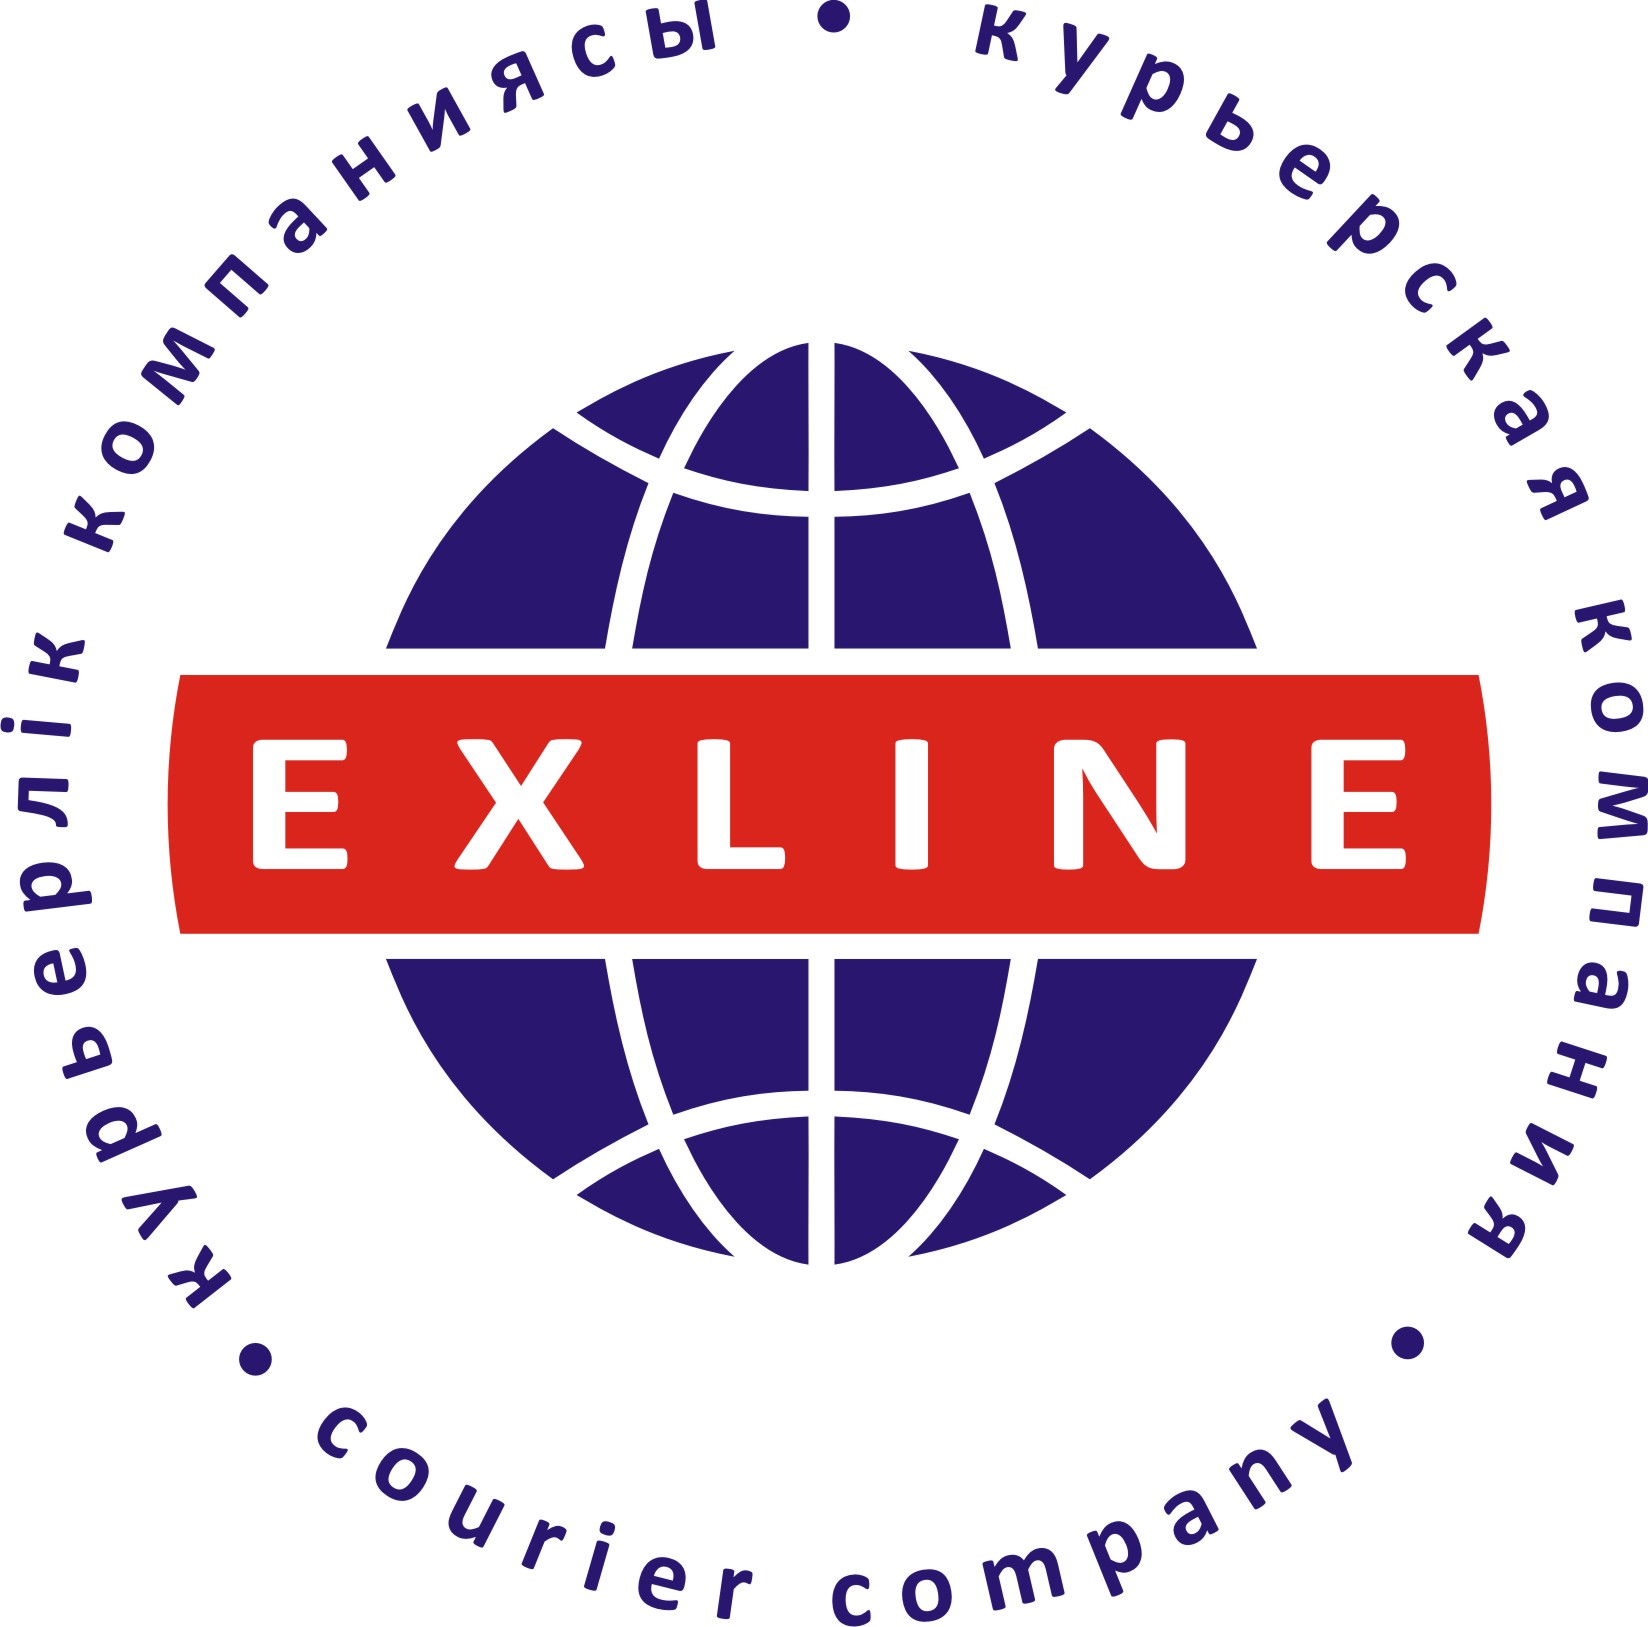 Ex line. Exline Курьерская компания. Exline доставка. Exline отслеживание. Exline доставка лого.